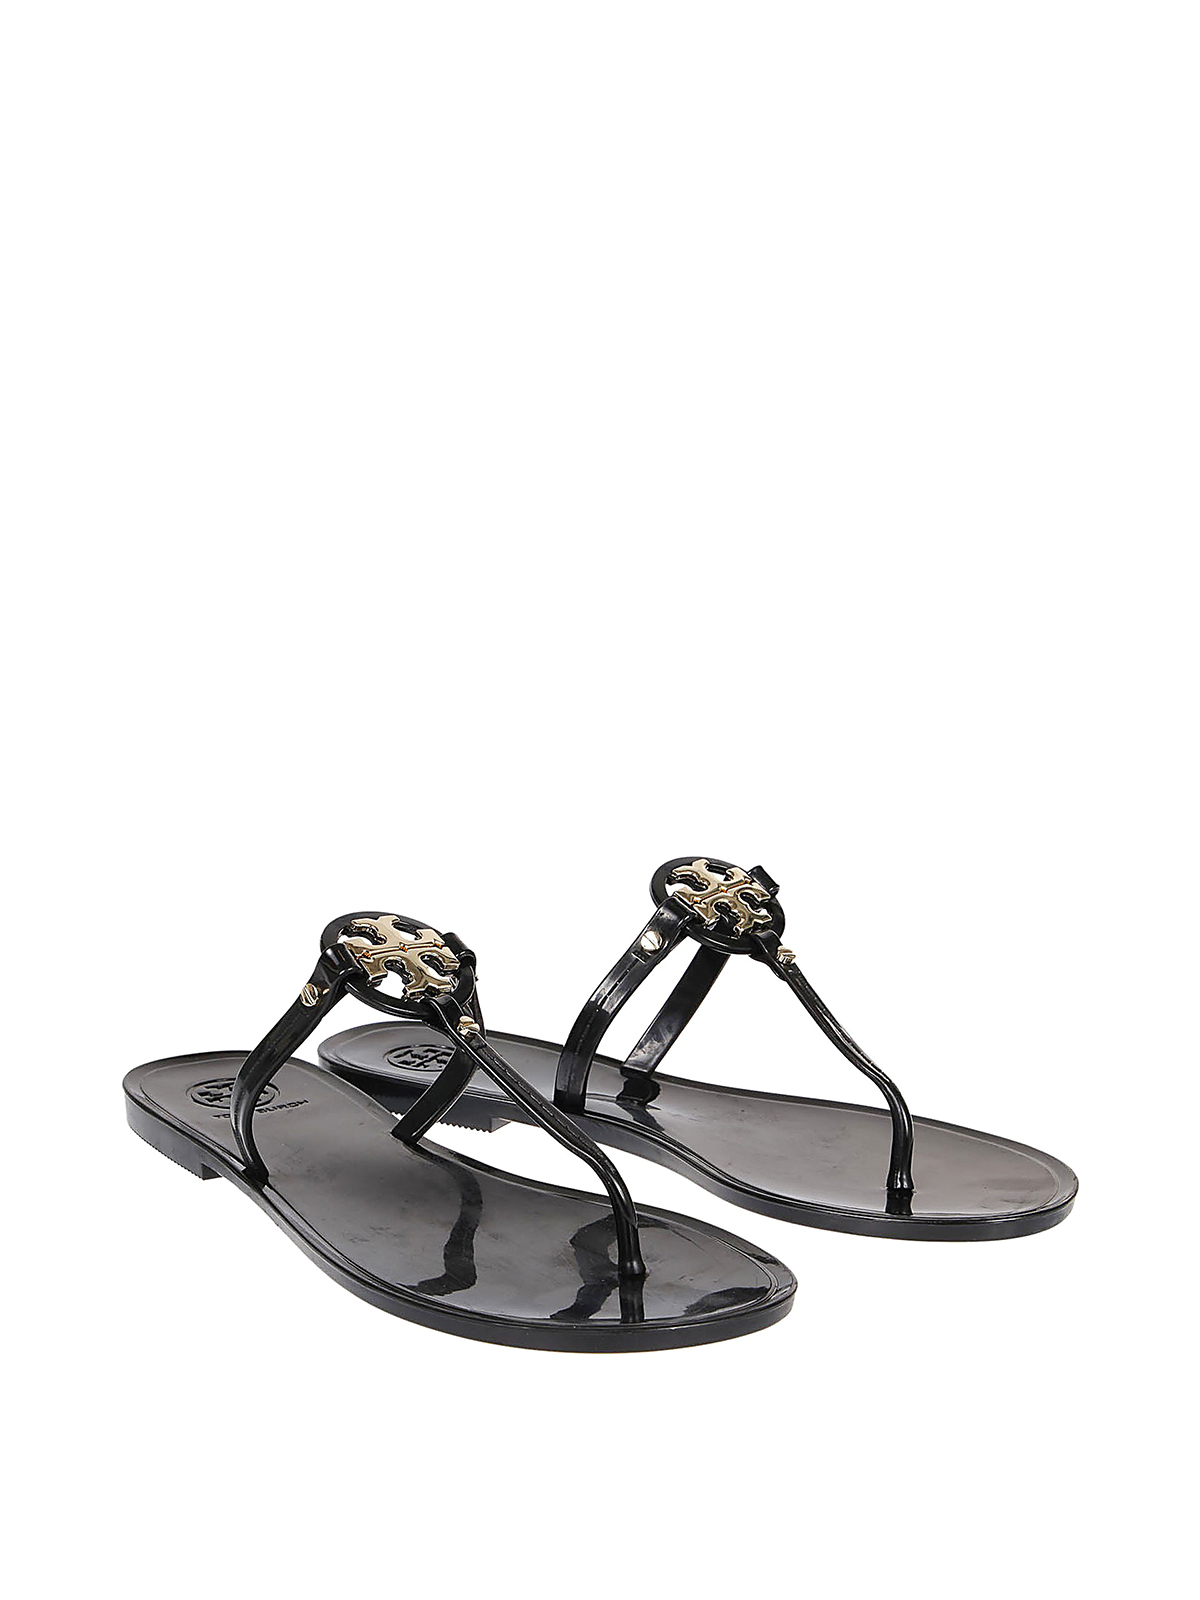 Flip flops Tory Burch - Mini Miller Jelly thong sandals - 51148678